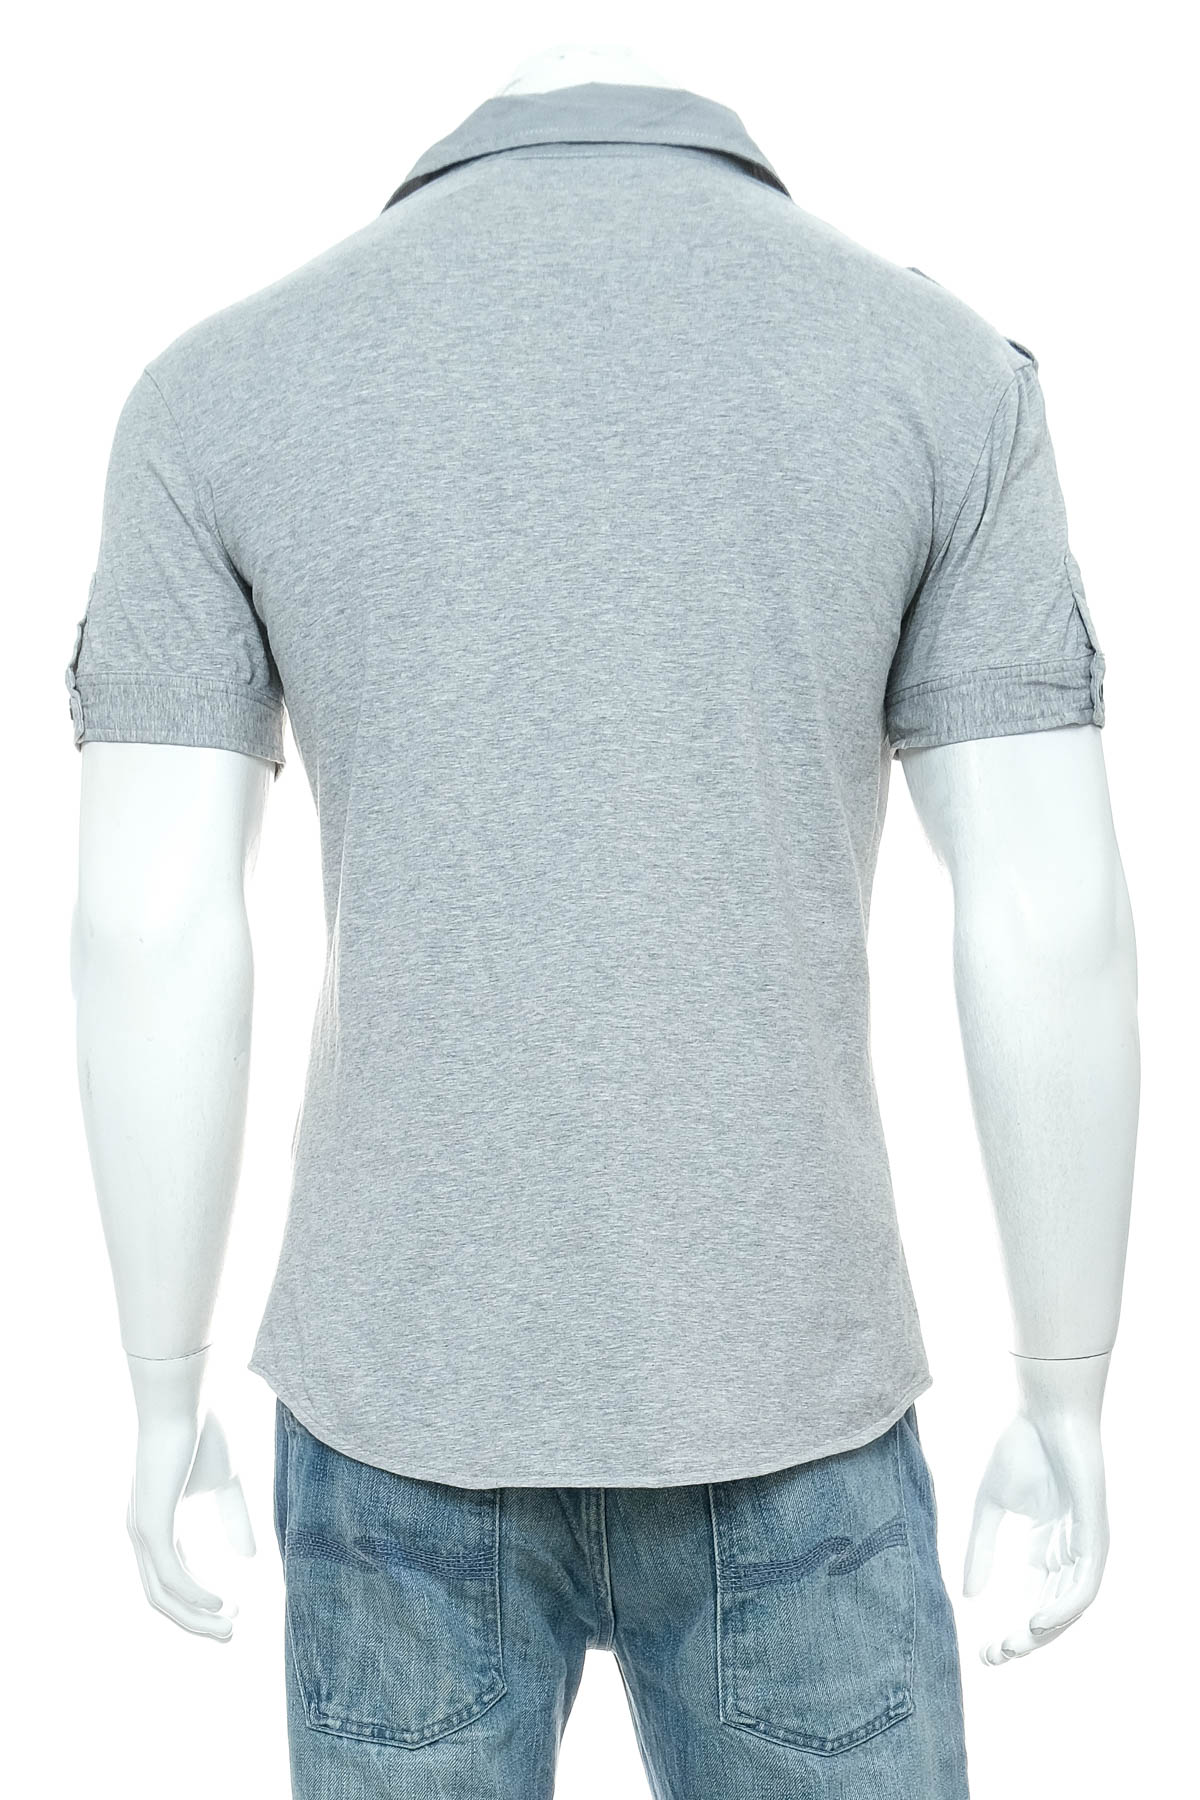 Ανδρικό πουκάμισο - Newoboy - 1